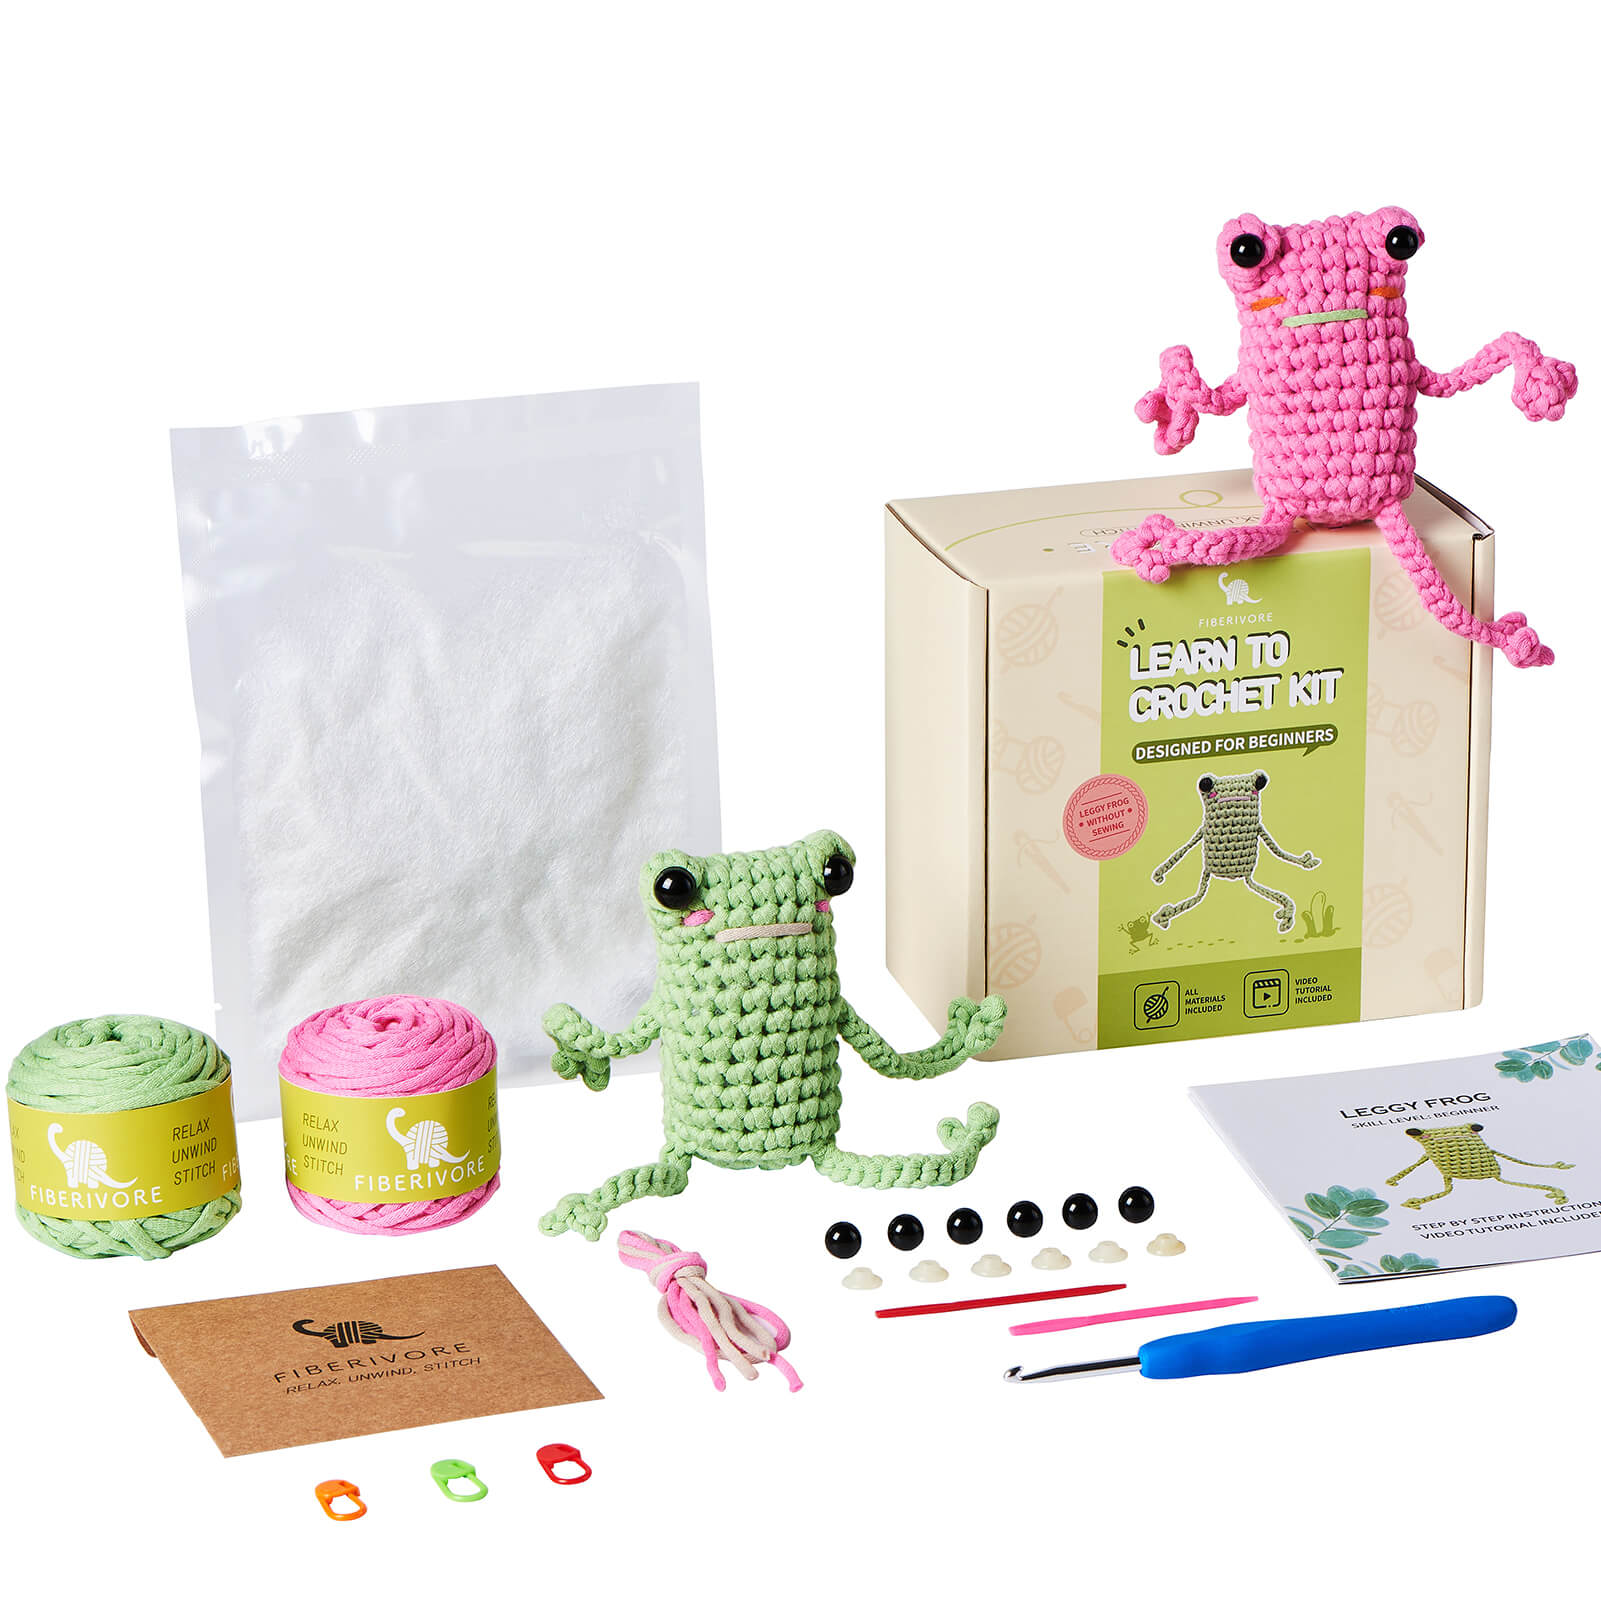  Crochet Kit for Beginner, Crochet Starter Kit w Step